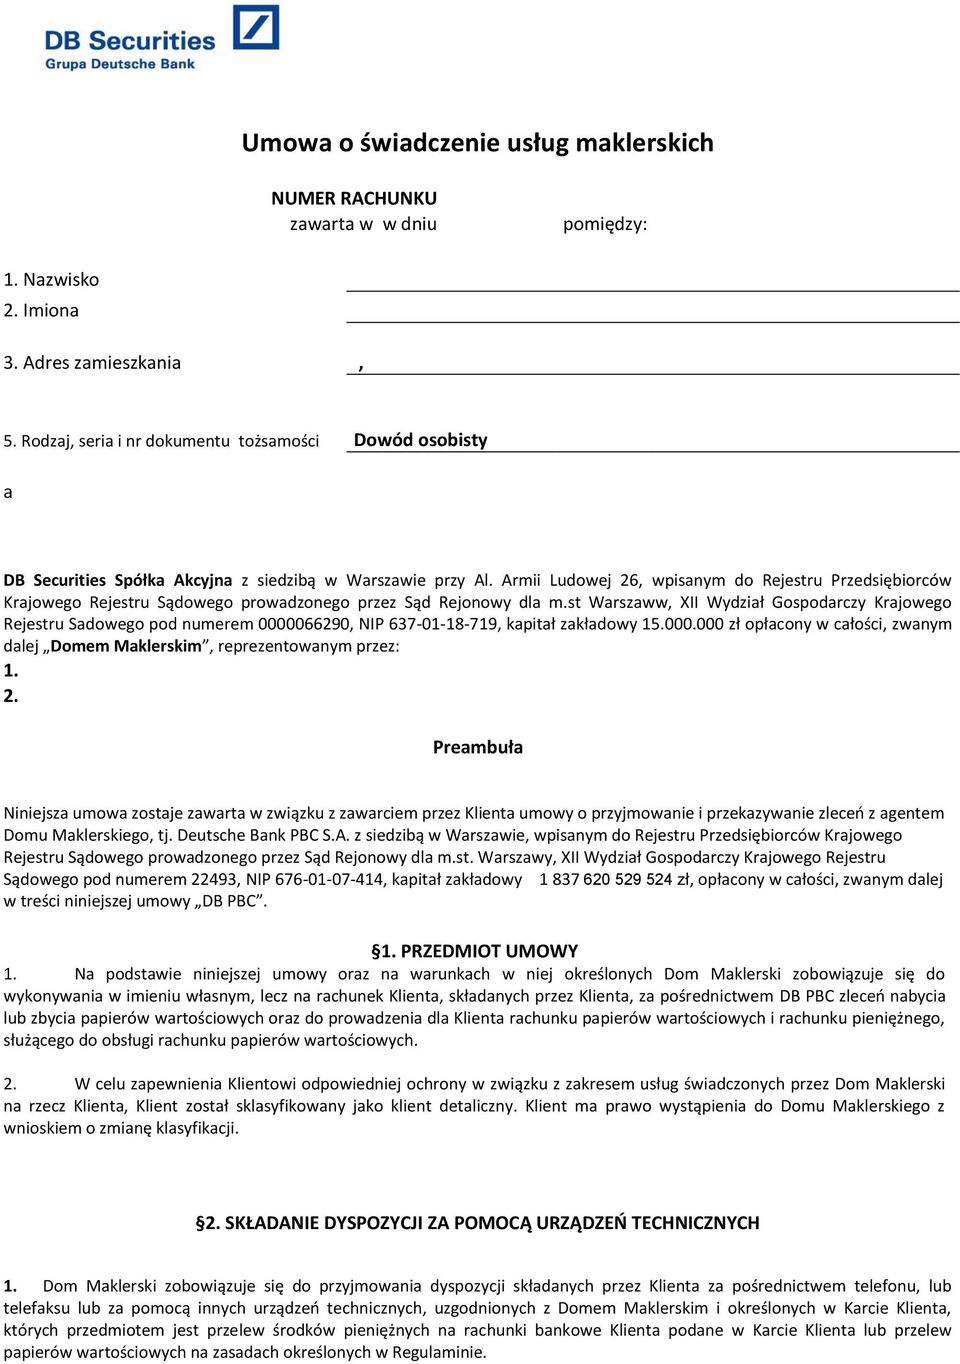 Armii Ludowej 26, wpisanym do Rejestru Przedsiębiorców Krajowego Rejestru Sądowego prowadzonego przez Sąd Rejonowy dla m.